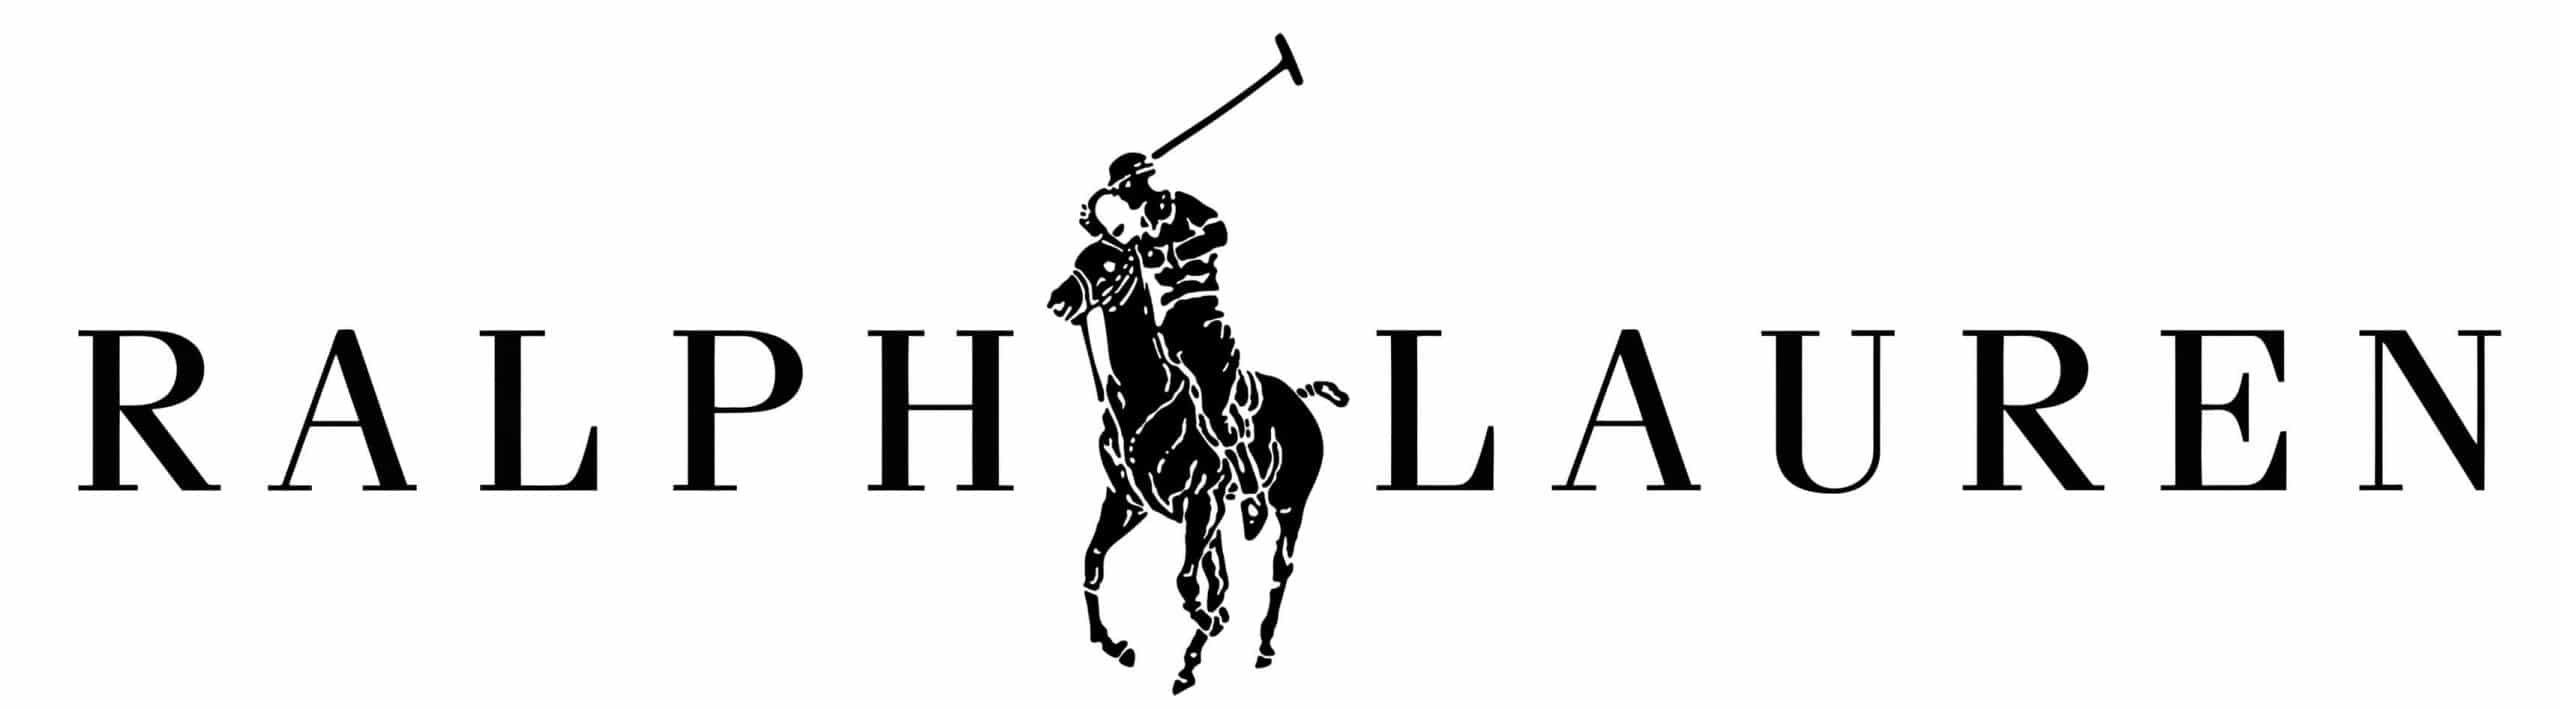 logotipo de ralph lauren